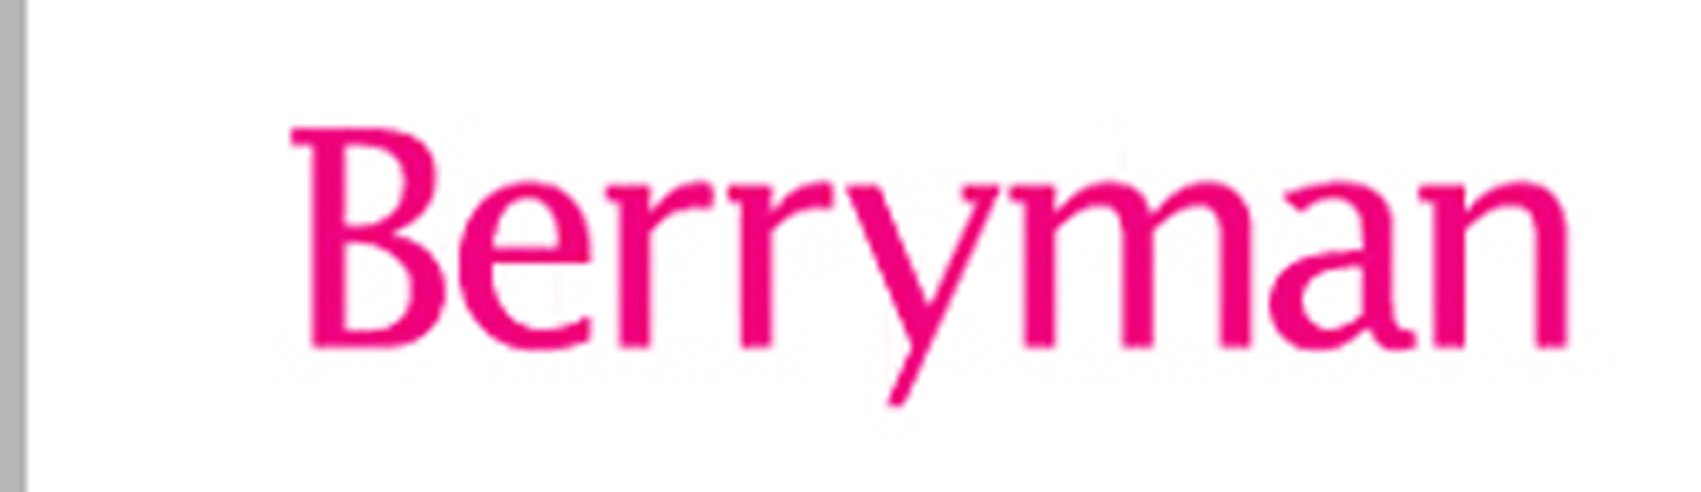 Berryman Logo 2].jpg